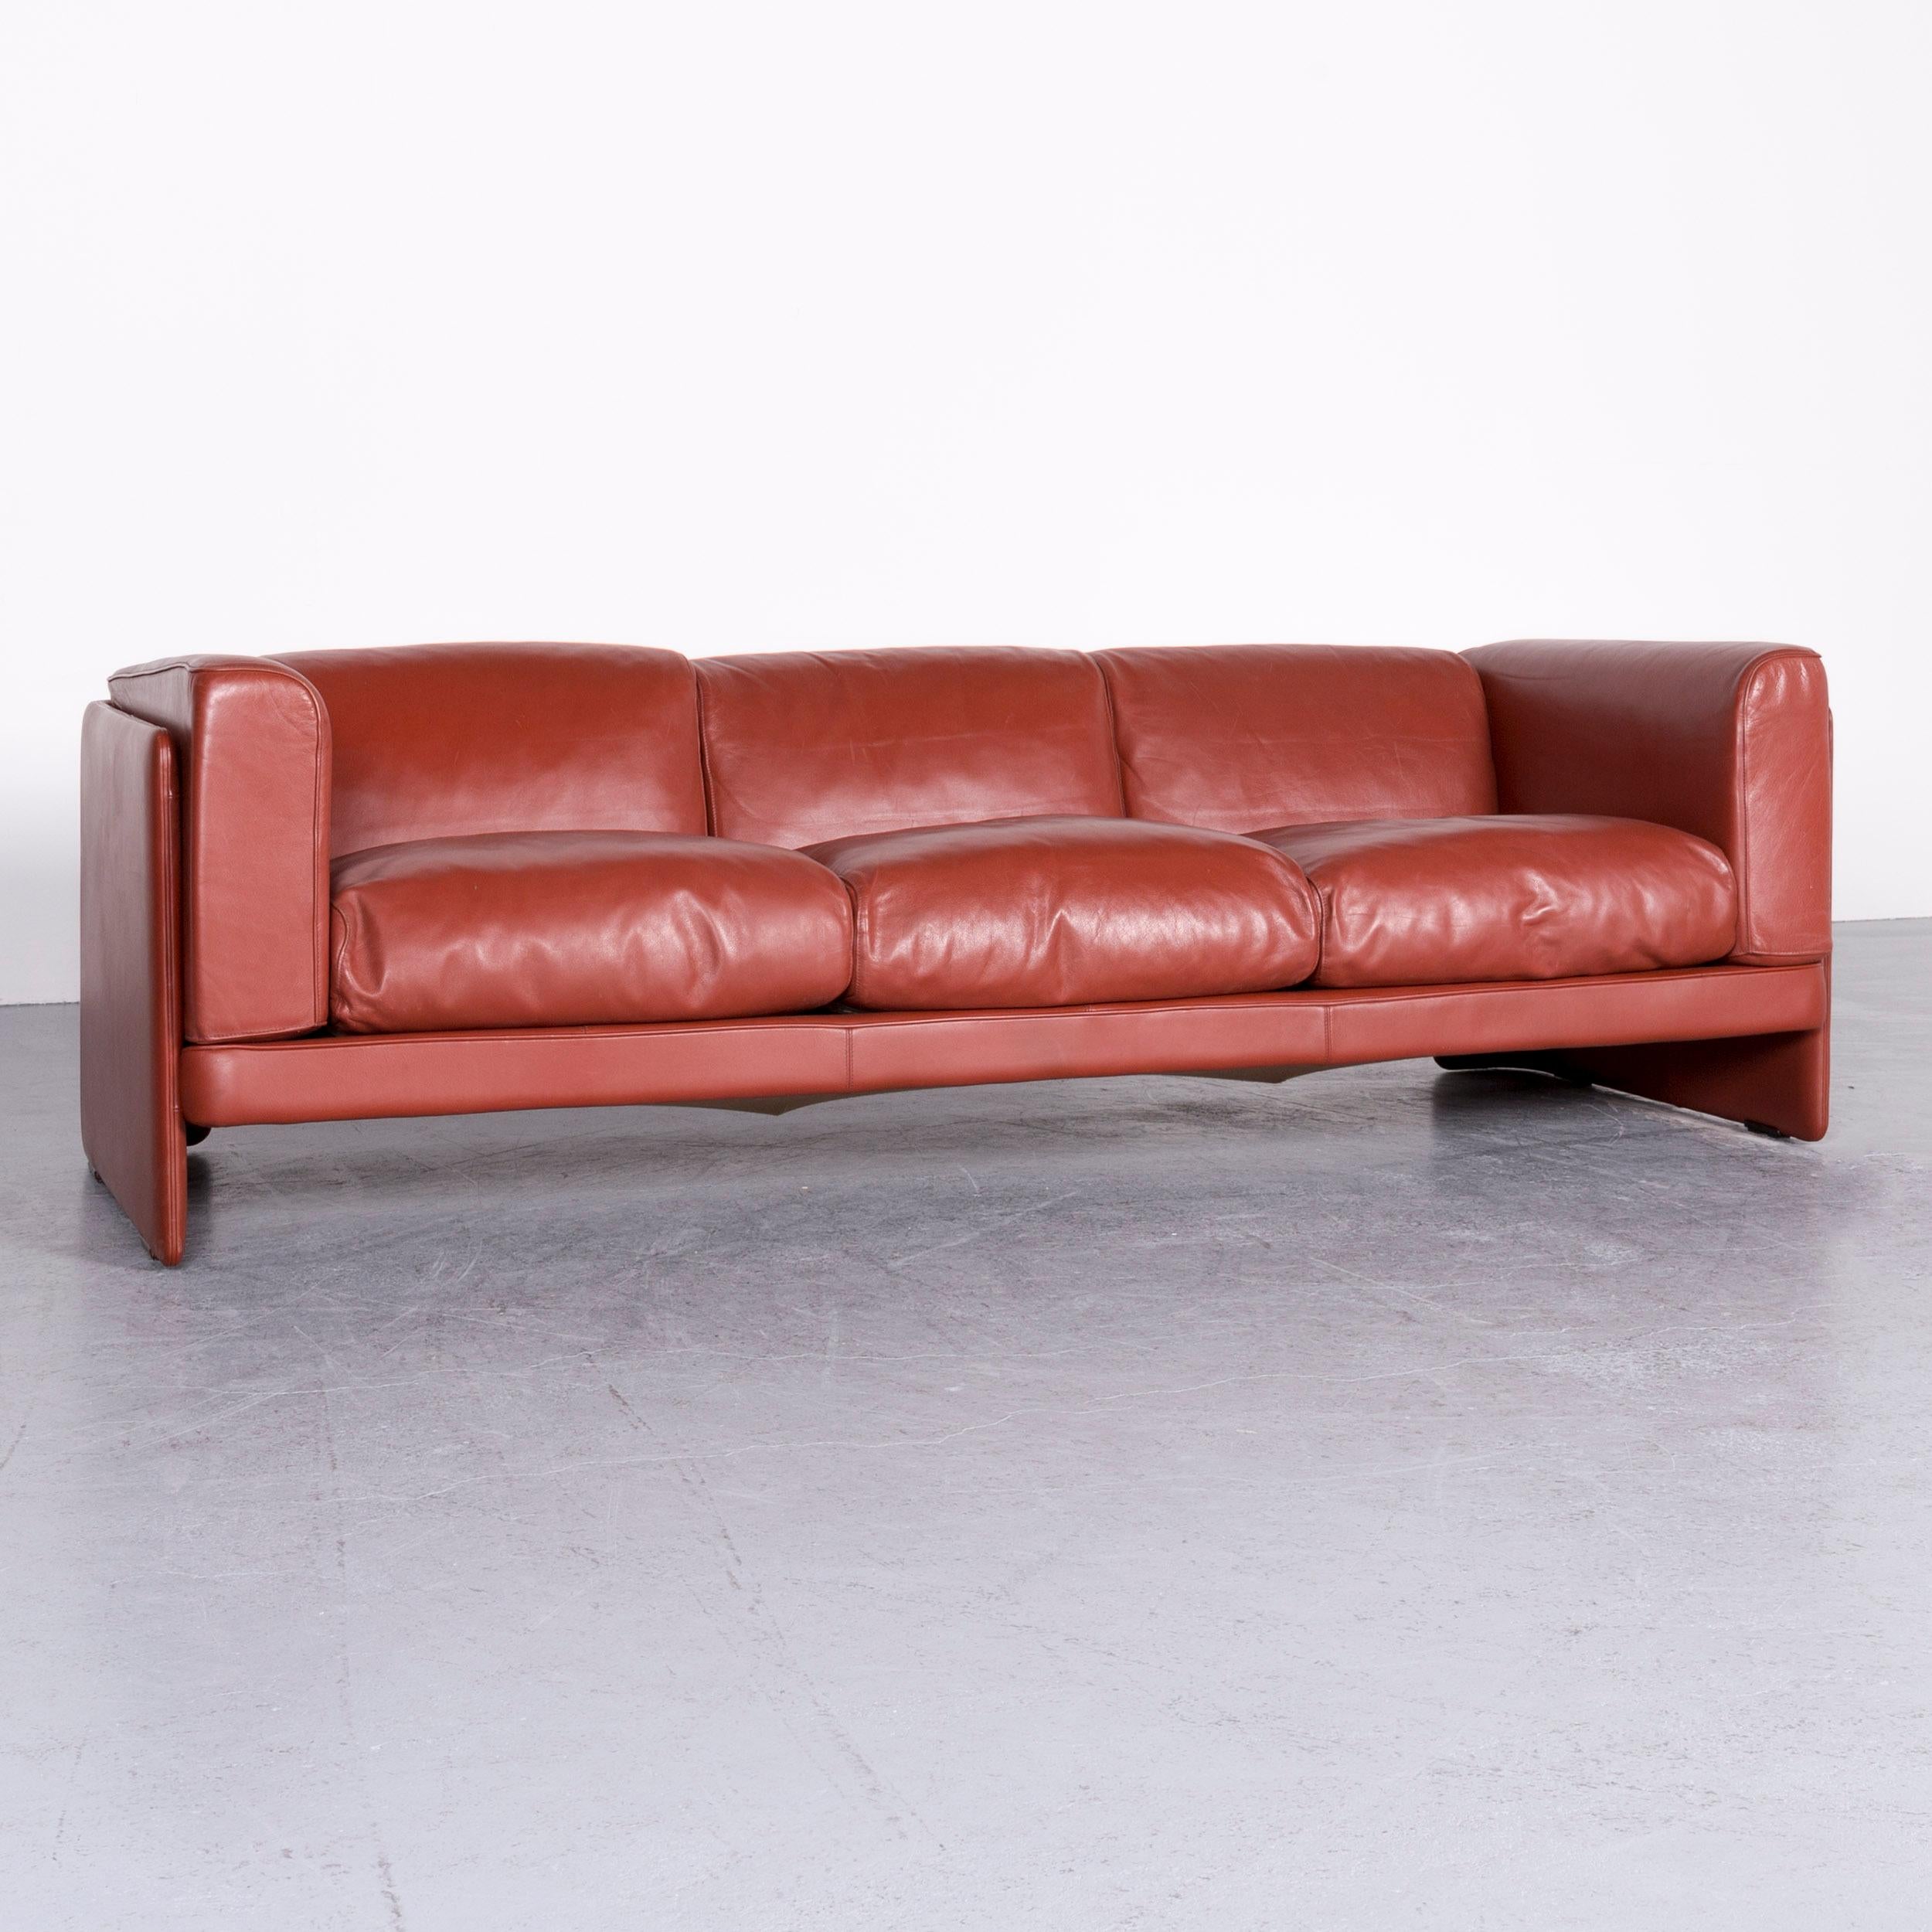 Italian Poltrona Frau Le Chapanelle Designer Leather Sofa Orange by Tito Agnoli For Sale